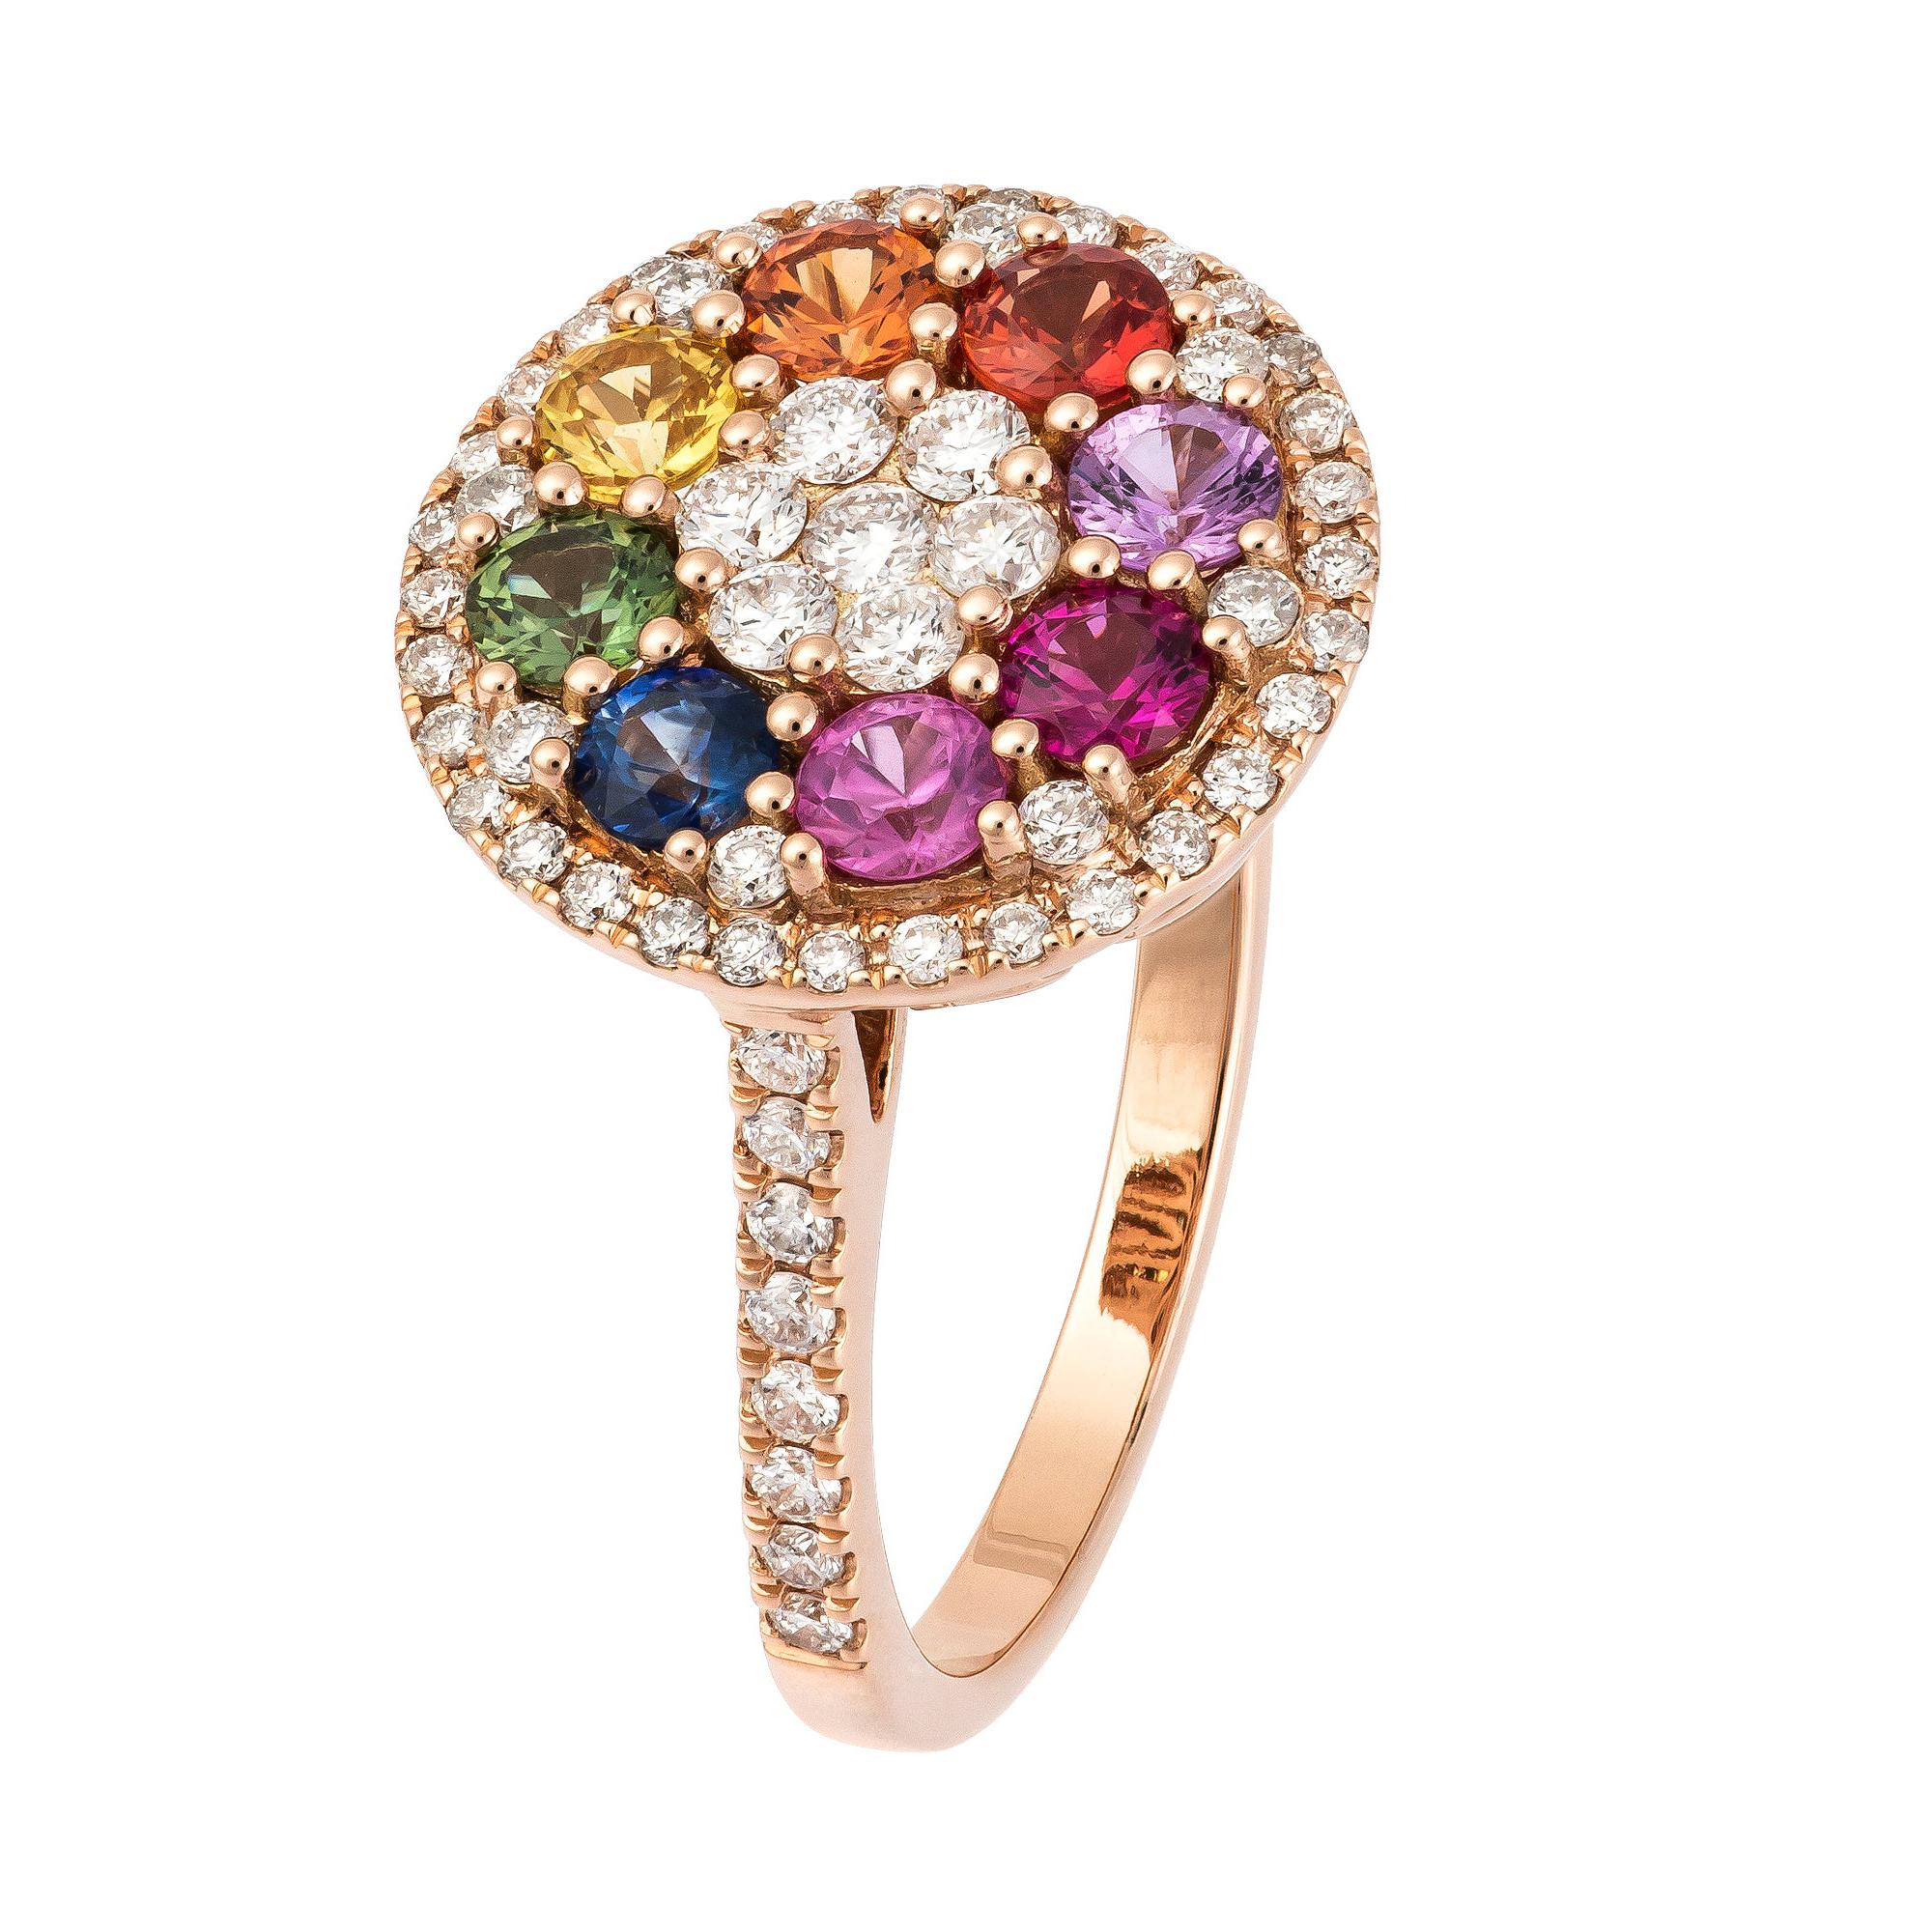 Designer Multisapphire Diamond Rose Gold 18K Colourful Flower Ring for Her For Sale